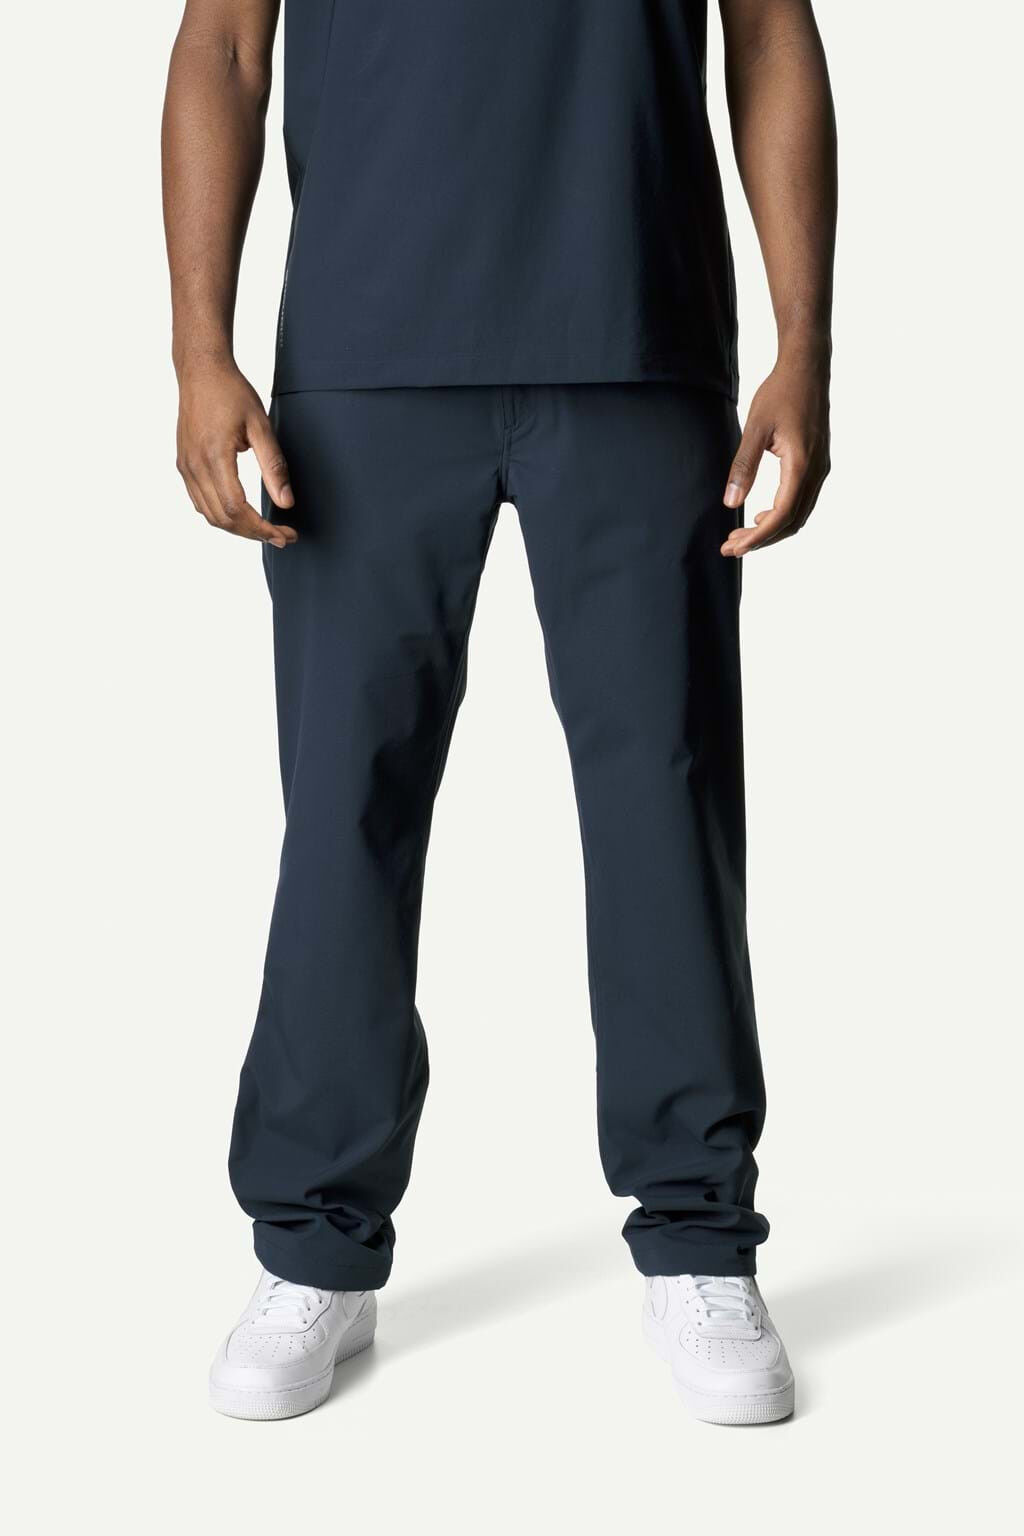 Houdini Sportswear Dock Pants - Walking trousers - Men's | Hardloop